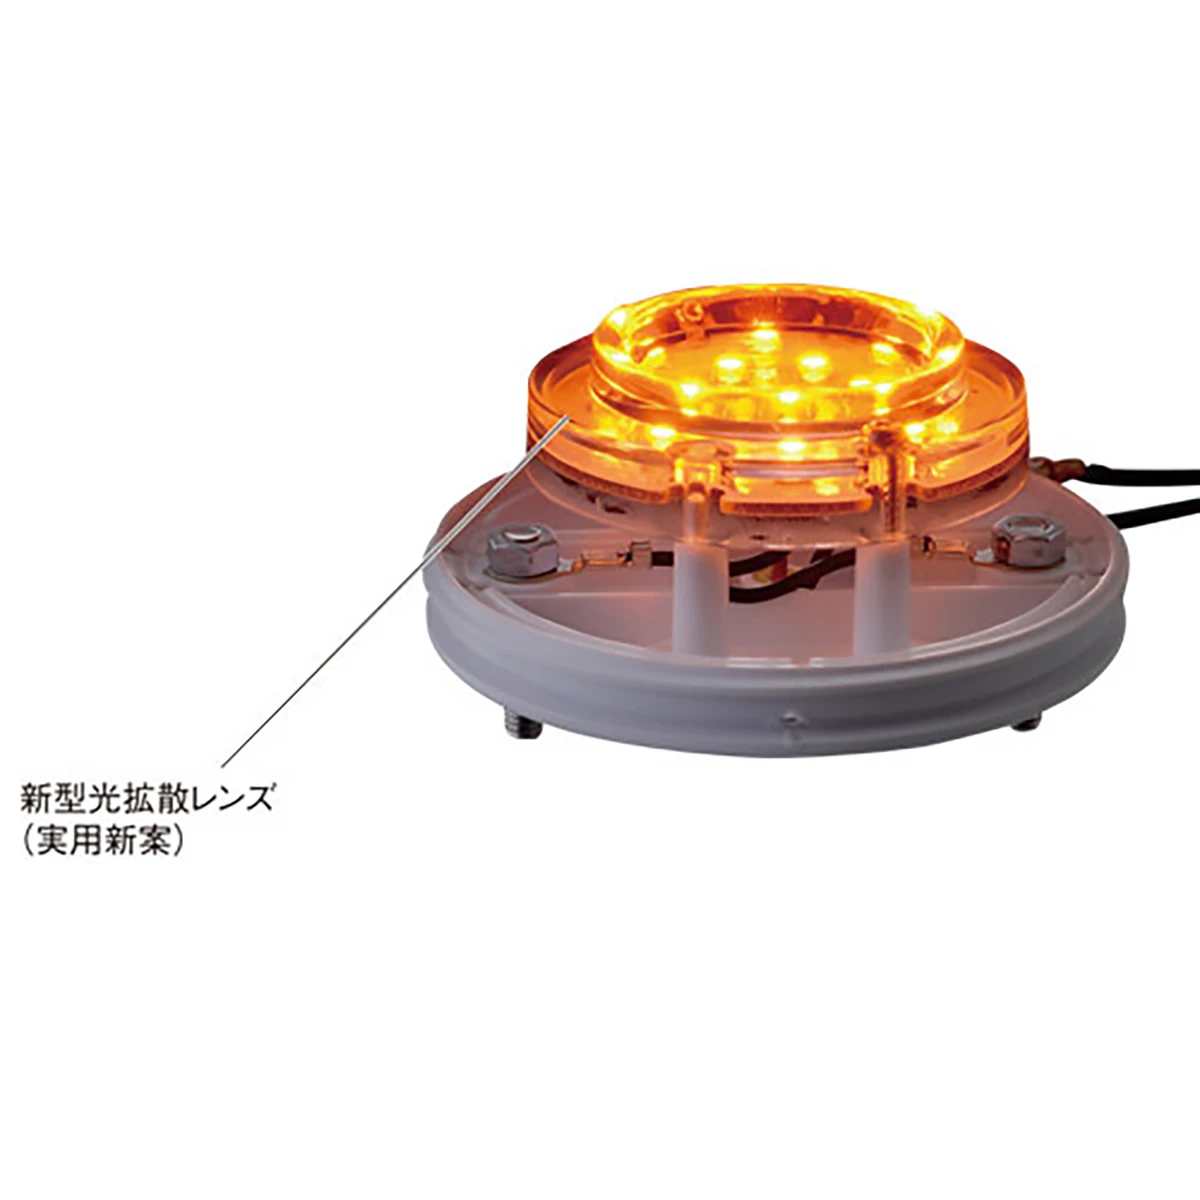 マーカー ランプ SMD LED プラスチックレンズ レッド DC12/DC24V 防水